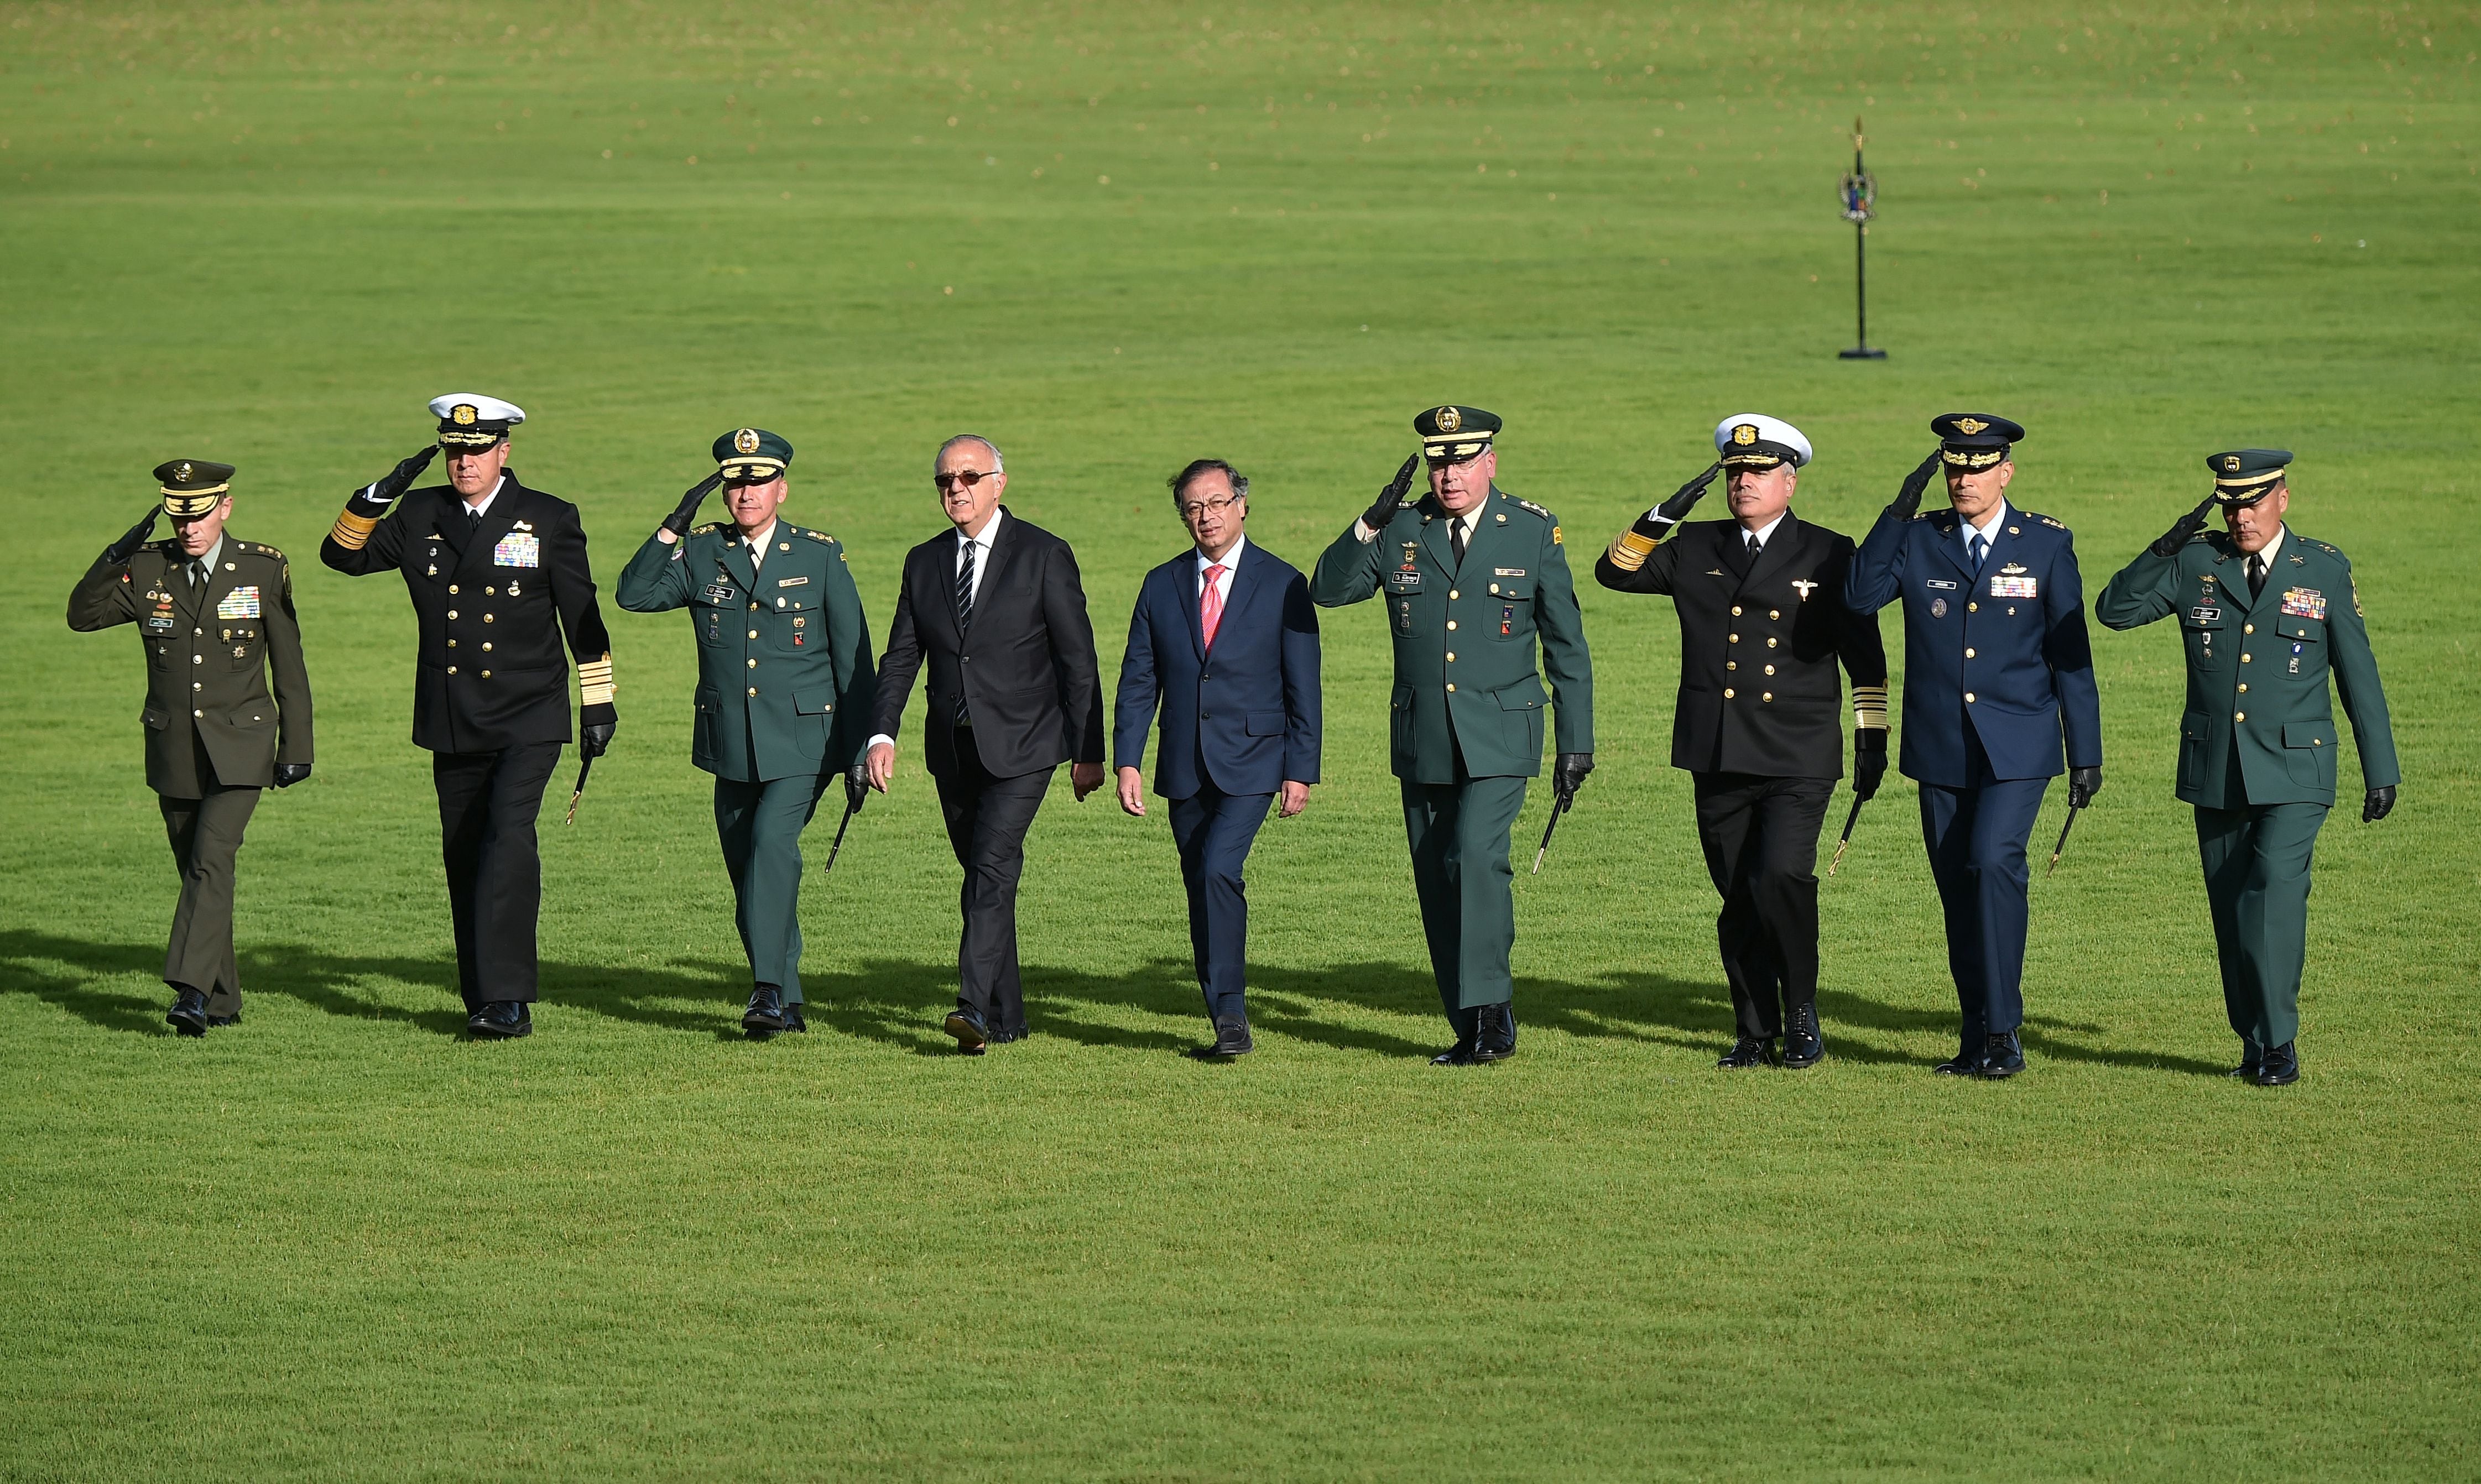 El presidente de Colombia, Gustavo Petro, quien aparecen en el centro de la foto con traje azul, ha intentado avanzar con los acuerdos de paz con los diferentes grupos guerrilleros desde que asumió el poder.